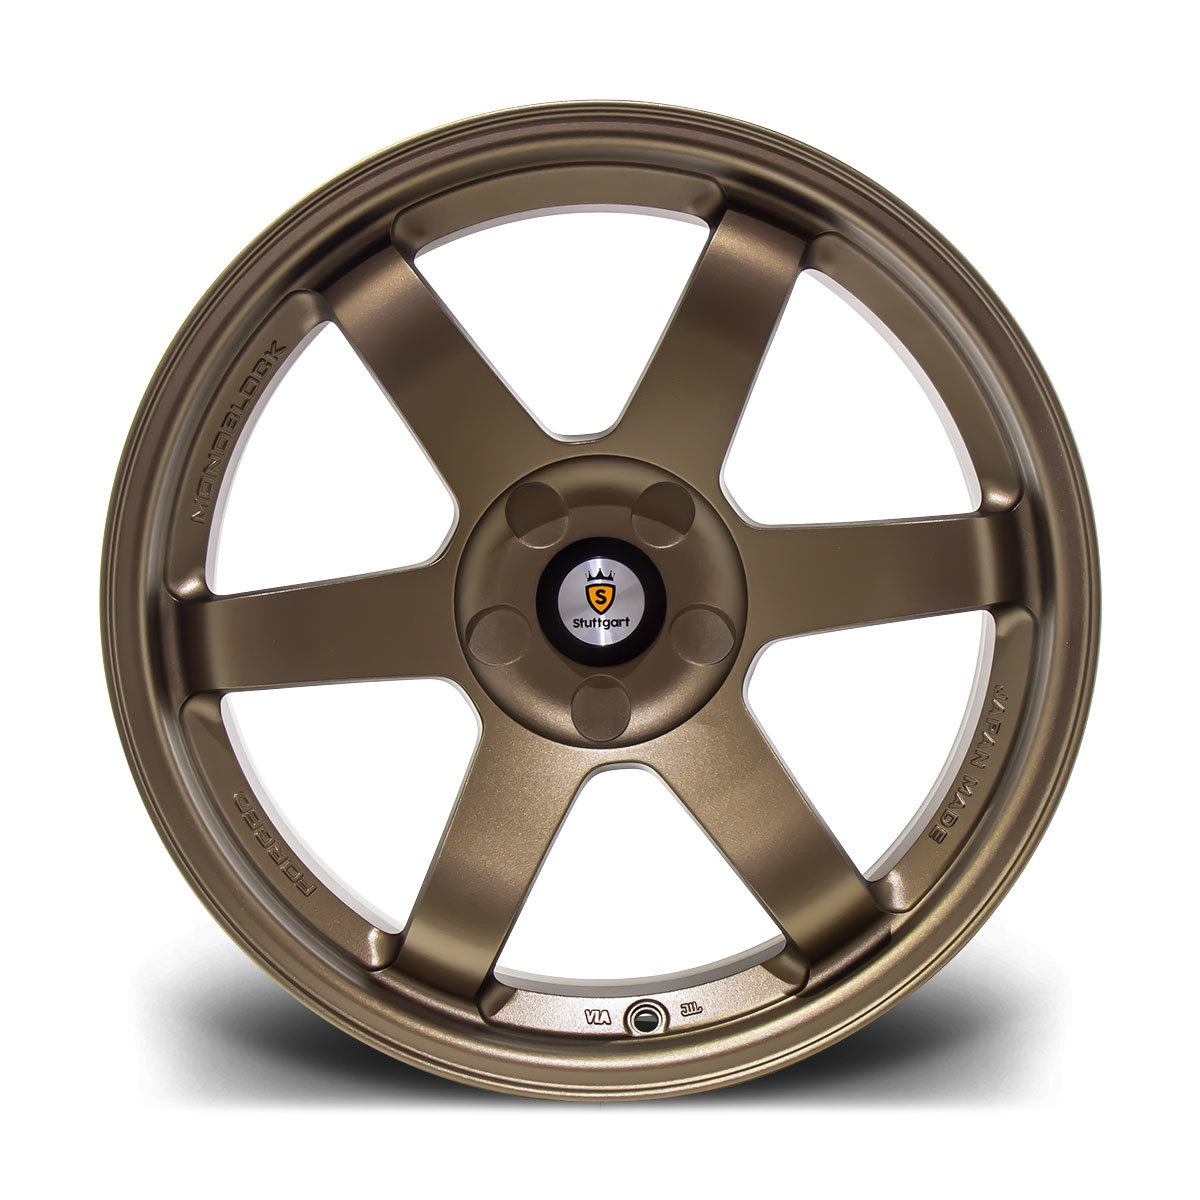 Stuttgart ST16-N light alloy wheels